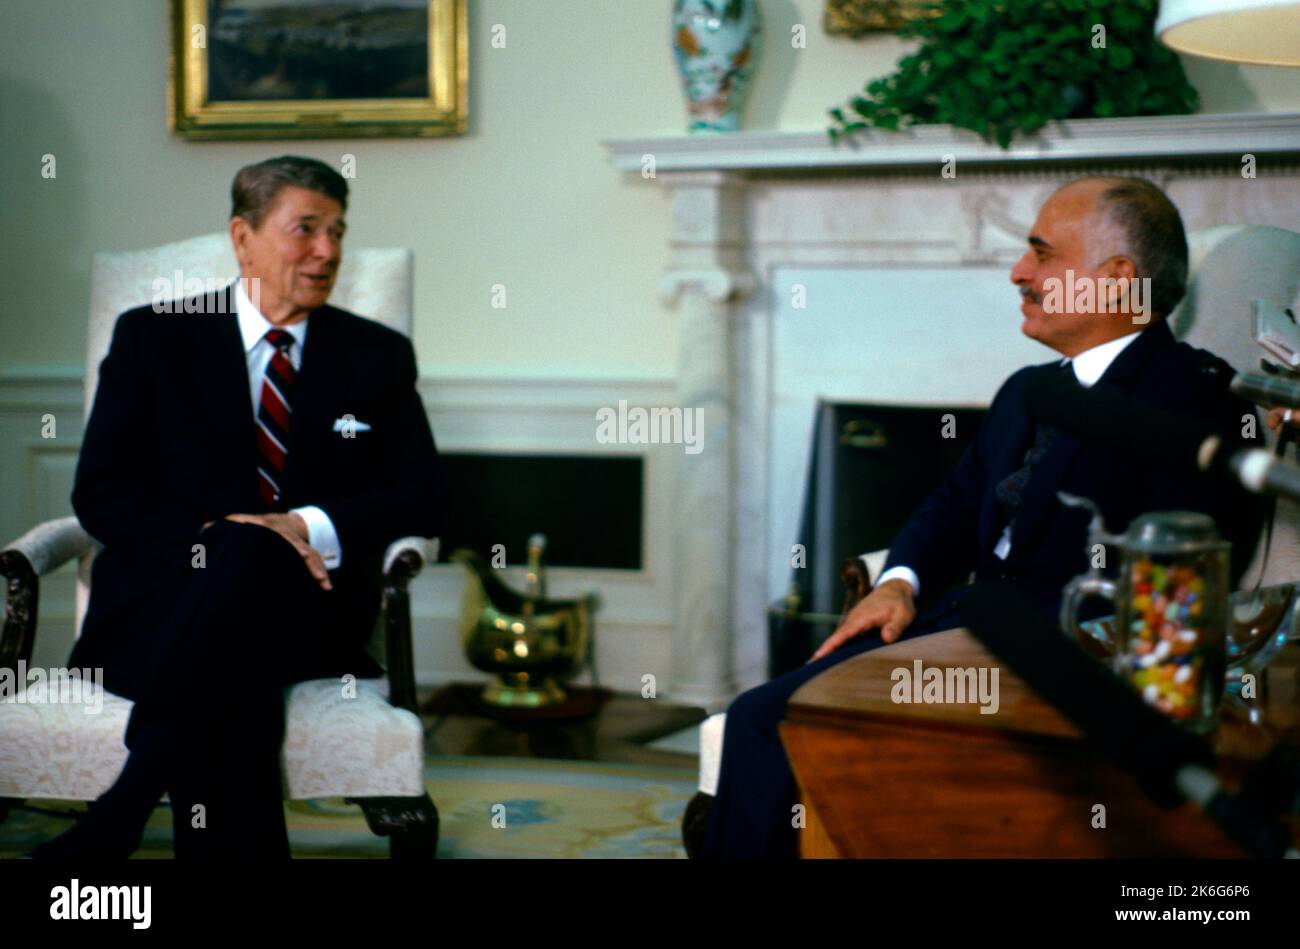 Rencontre du président AMÉRICAIN Ronald Reagan avec le roi Hussein de Jordanie à la Maison Blanche 21 décembre 1982 Washington DC États-Unis Banque D'Images